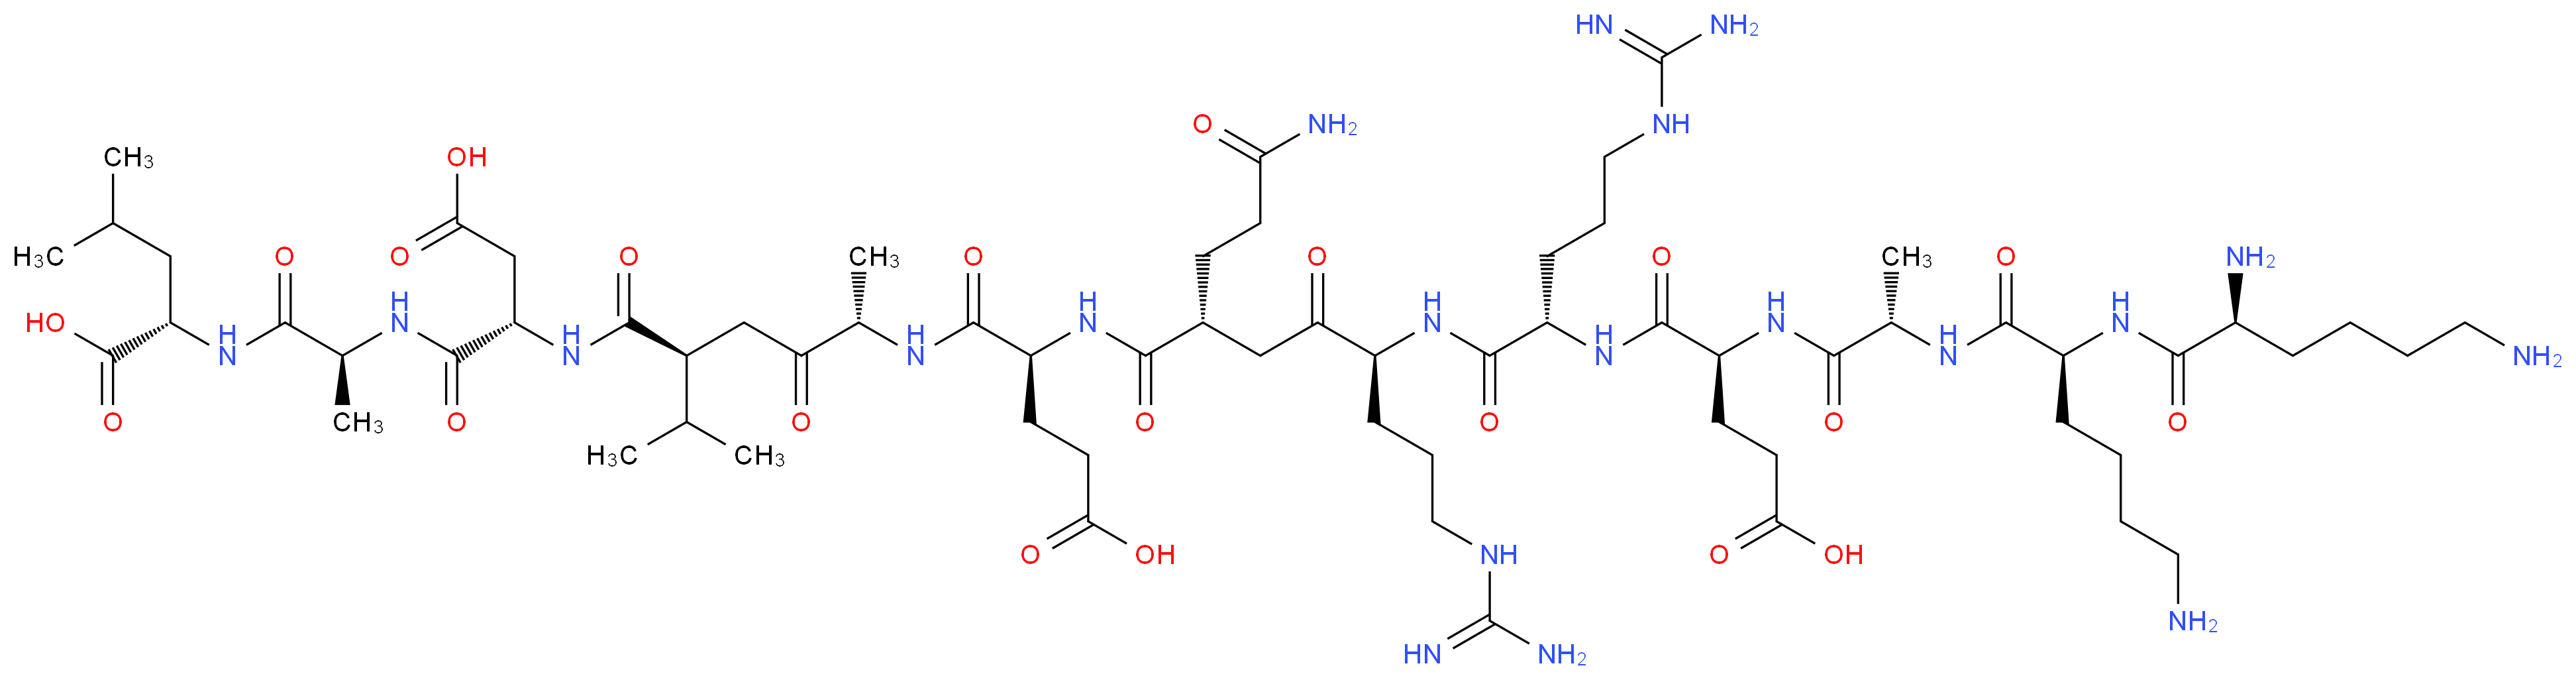 167114-91-2 molecular structure